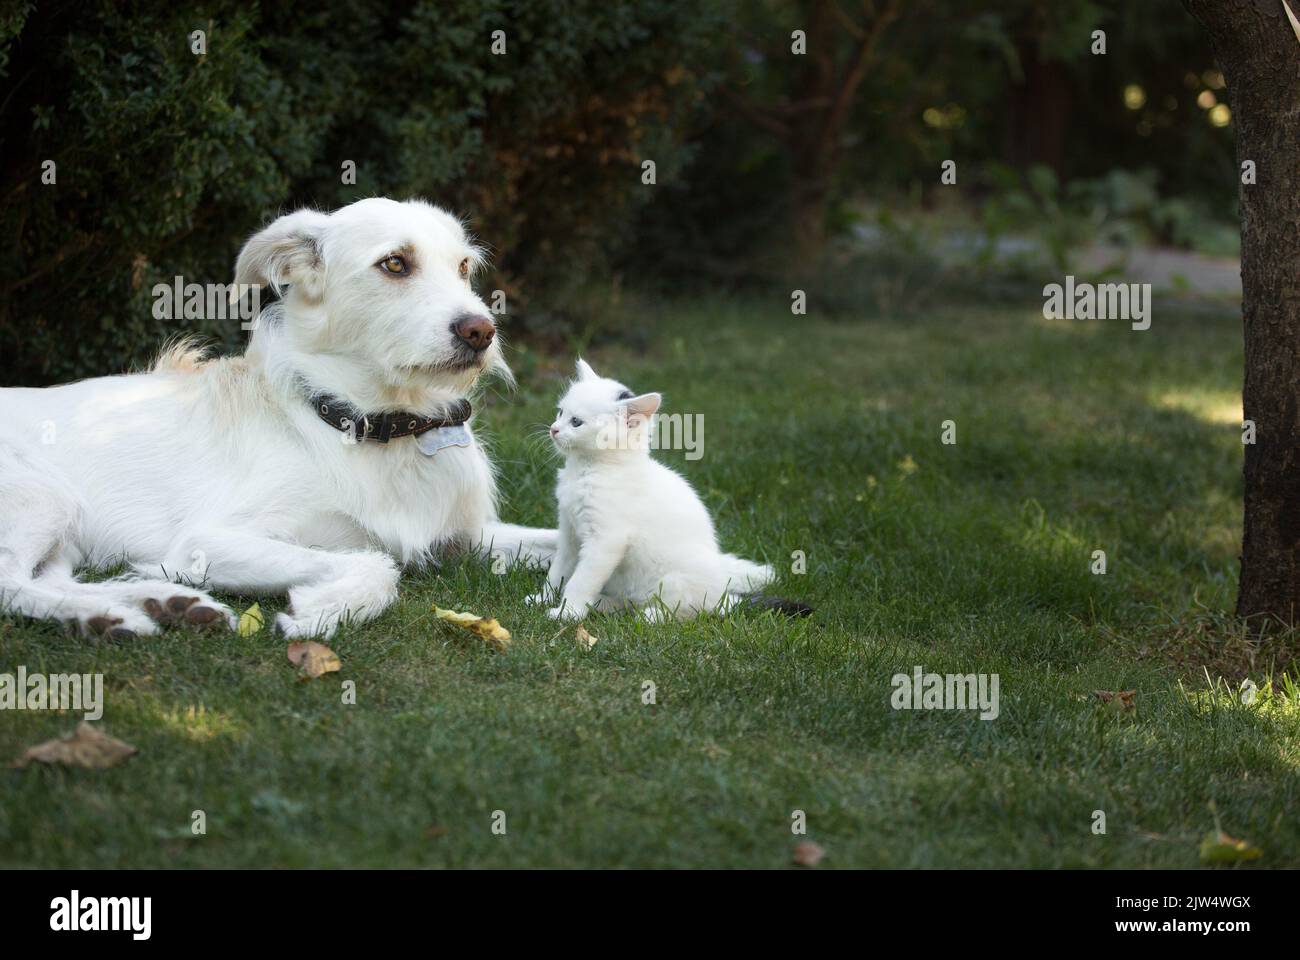 il cane grande bianco si trova accanto ad un piccolo gattino bianco seduto sull'erba verde. incontro amichevole, relazioni tra gli animali, conoscenza con un nuovo animale domestico. Foto Stock